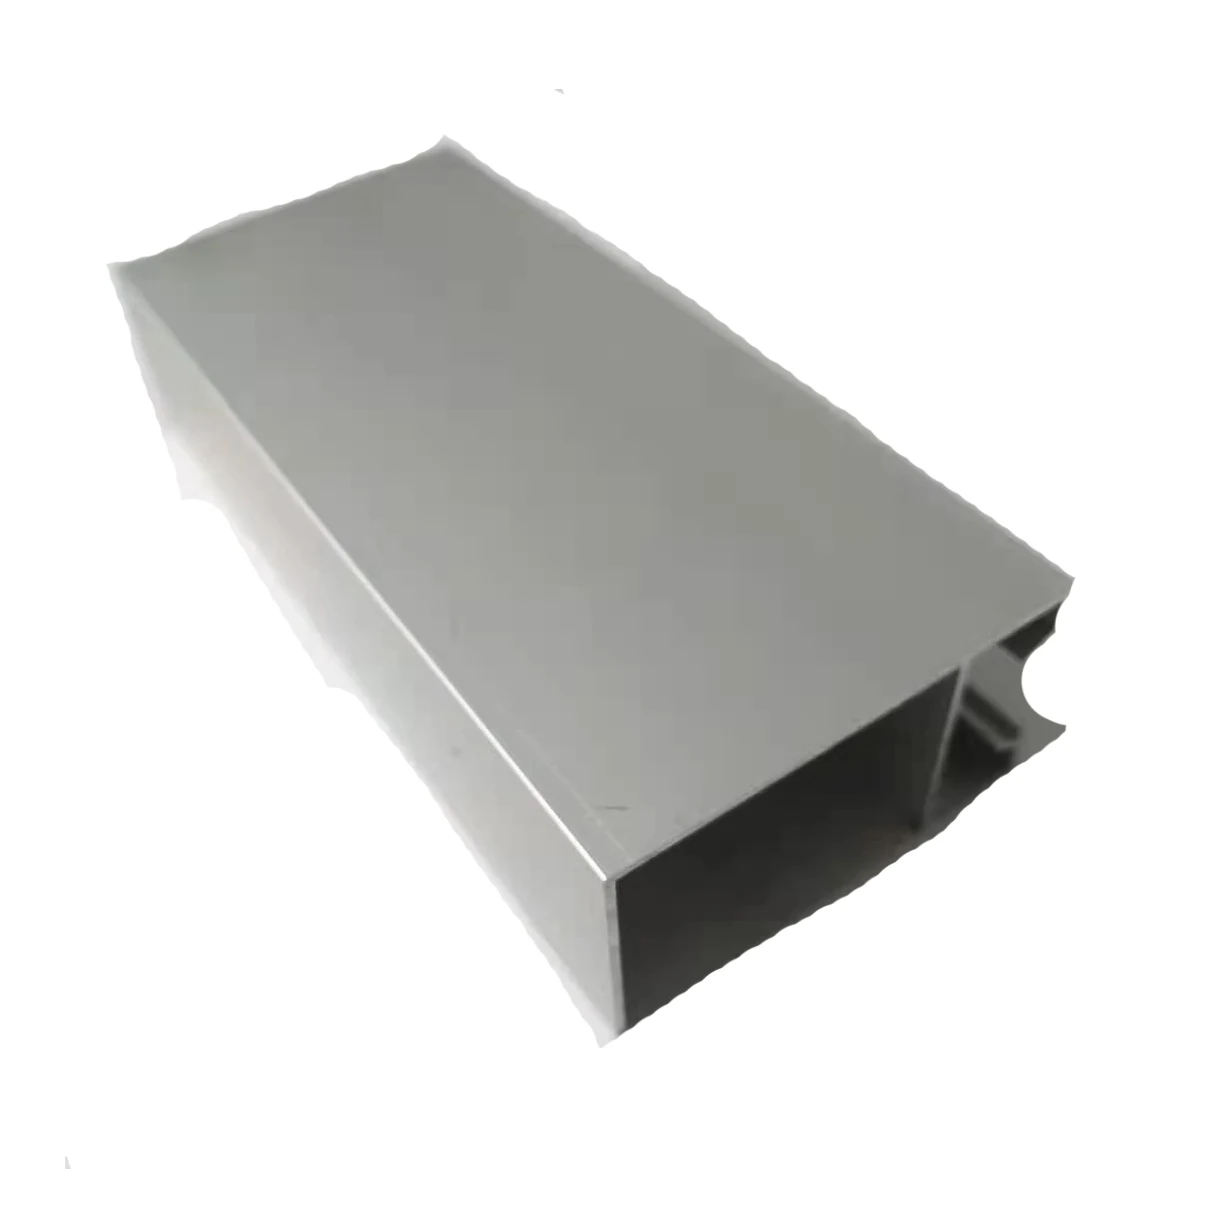 La protuberancia de aluminio anodizada que pule con chorro de arena de plata conveniente del área de Suramérica perfila la aleación 6063 T5